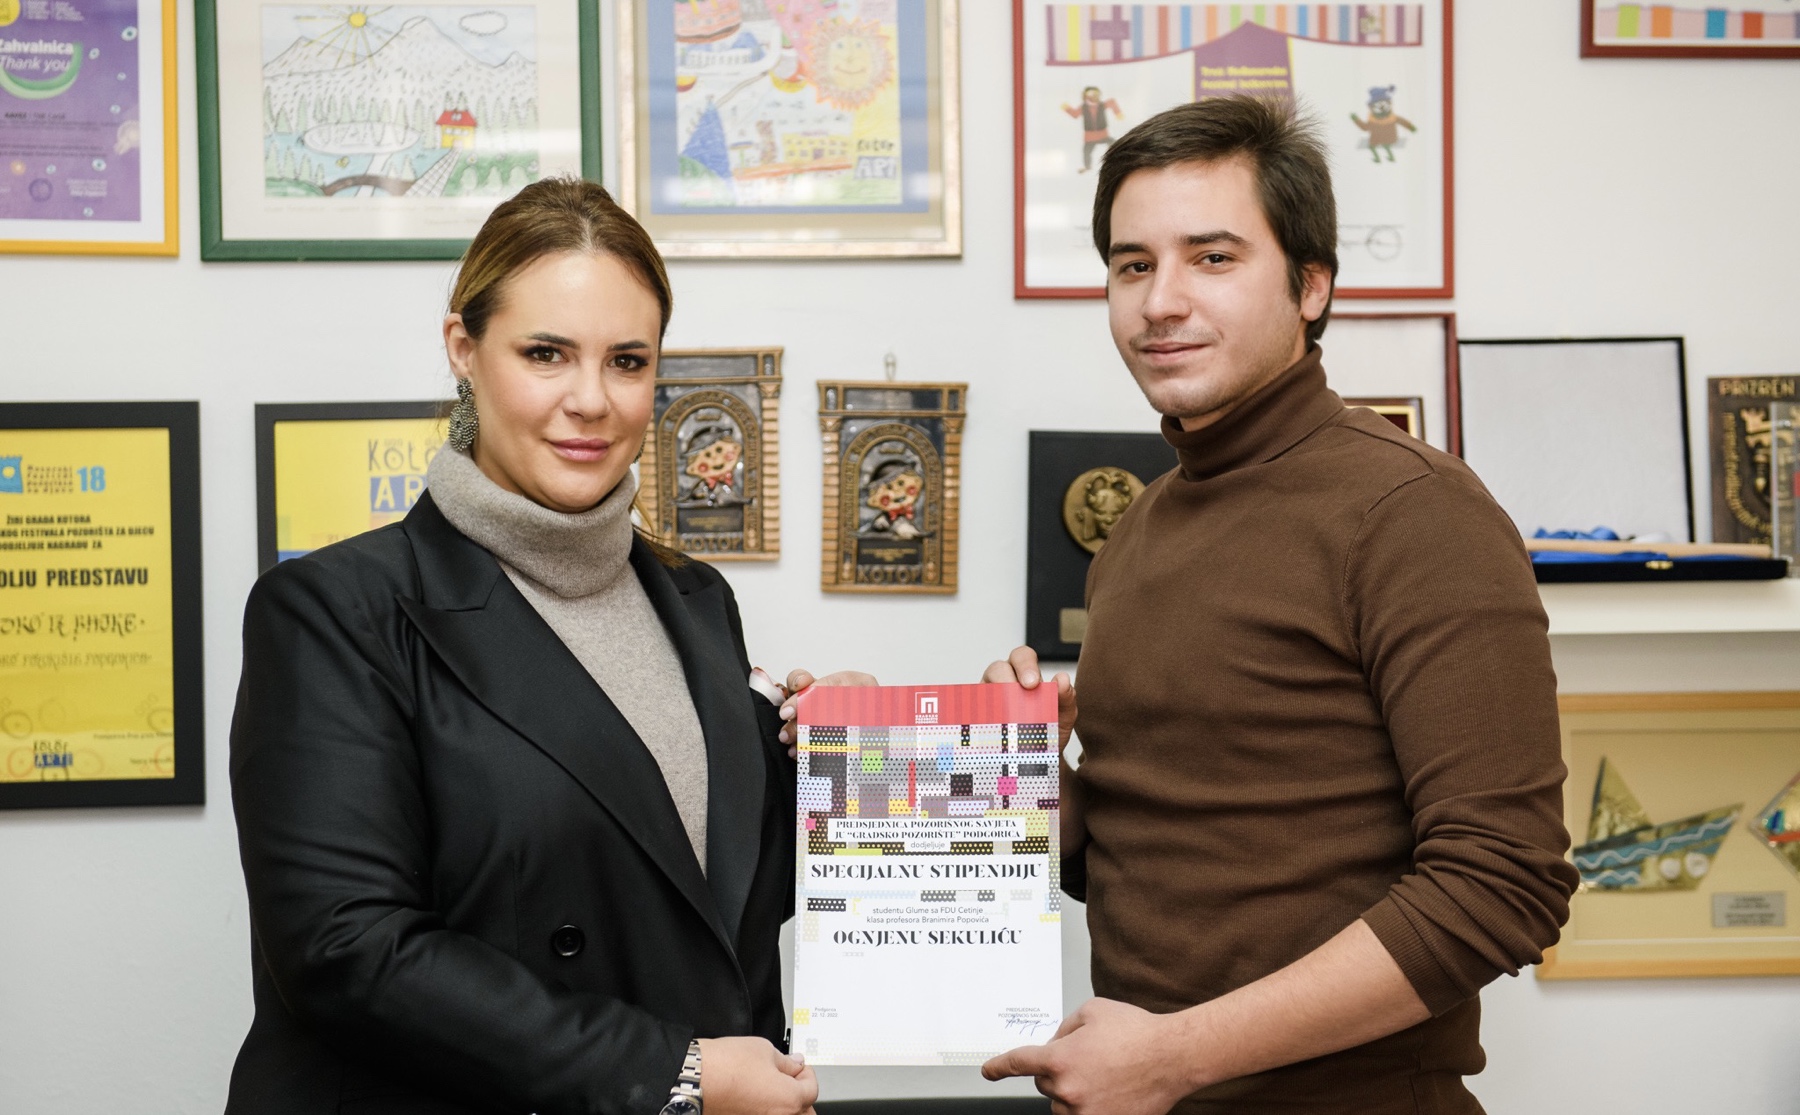 Predsjednica Pozorišnog savjeta Nina Redžepagić dodjelila specijalnu stipendiju